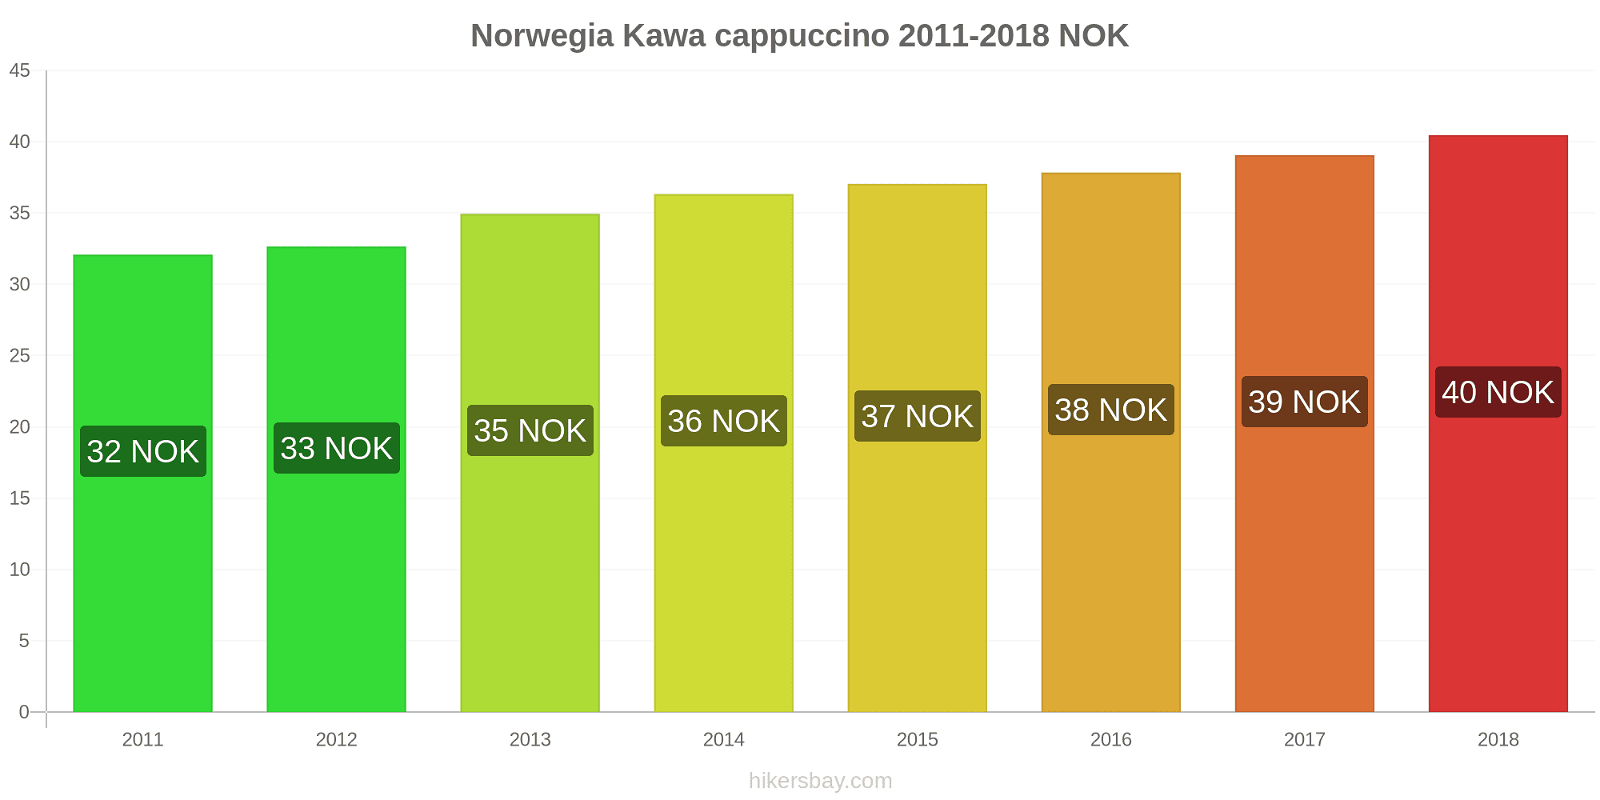 Norwegia zmiany cen Kawa cappuccino hikersbay.com